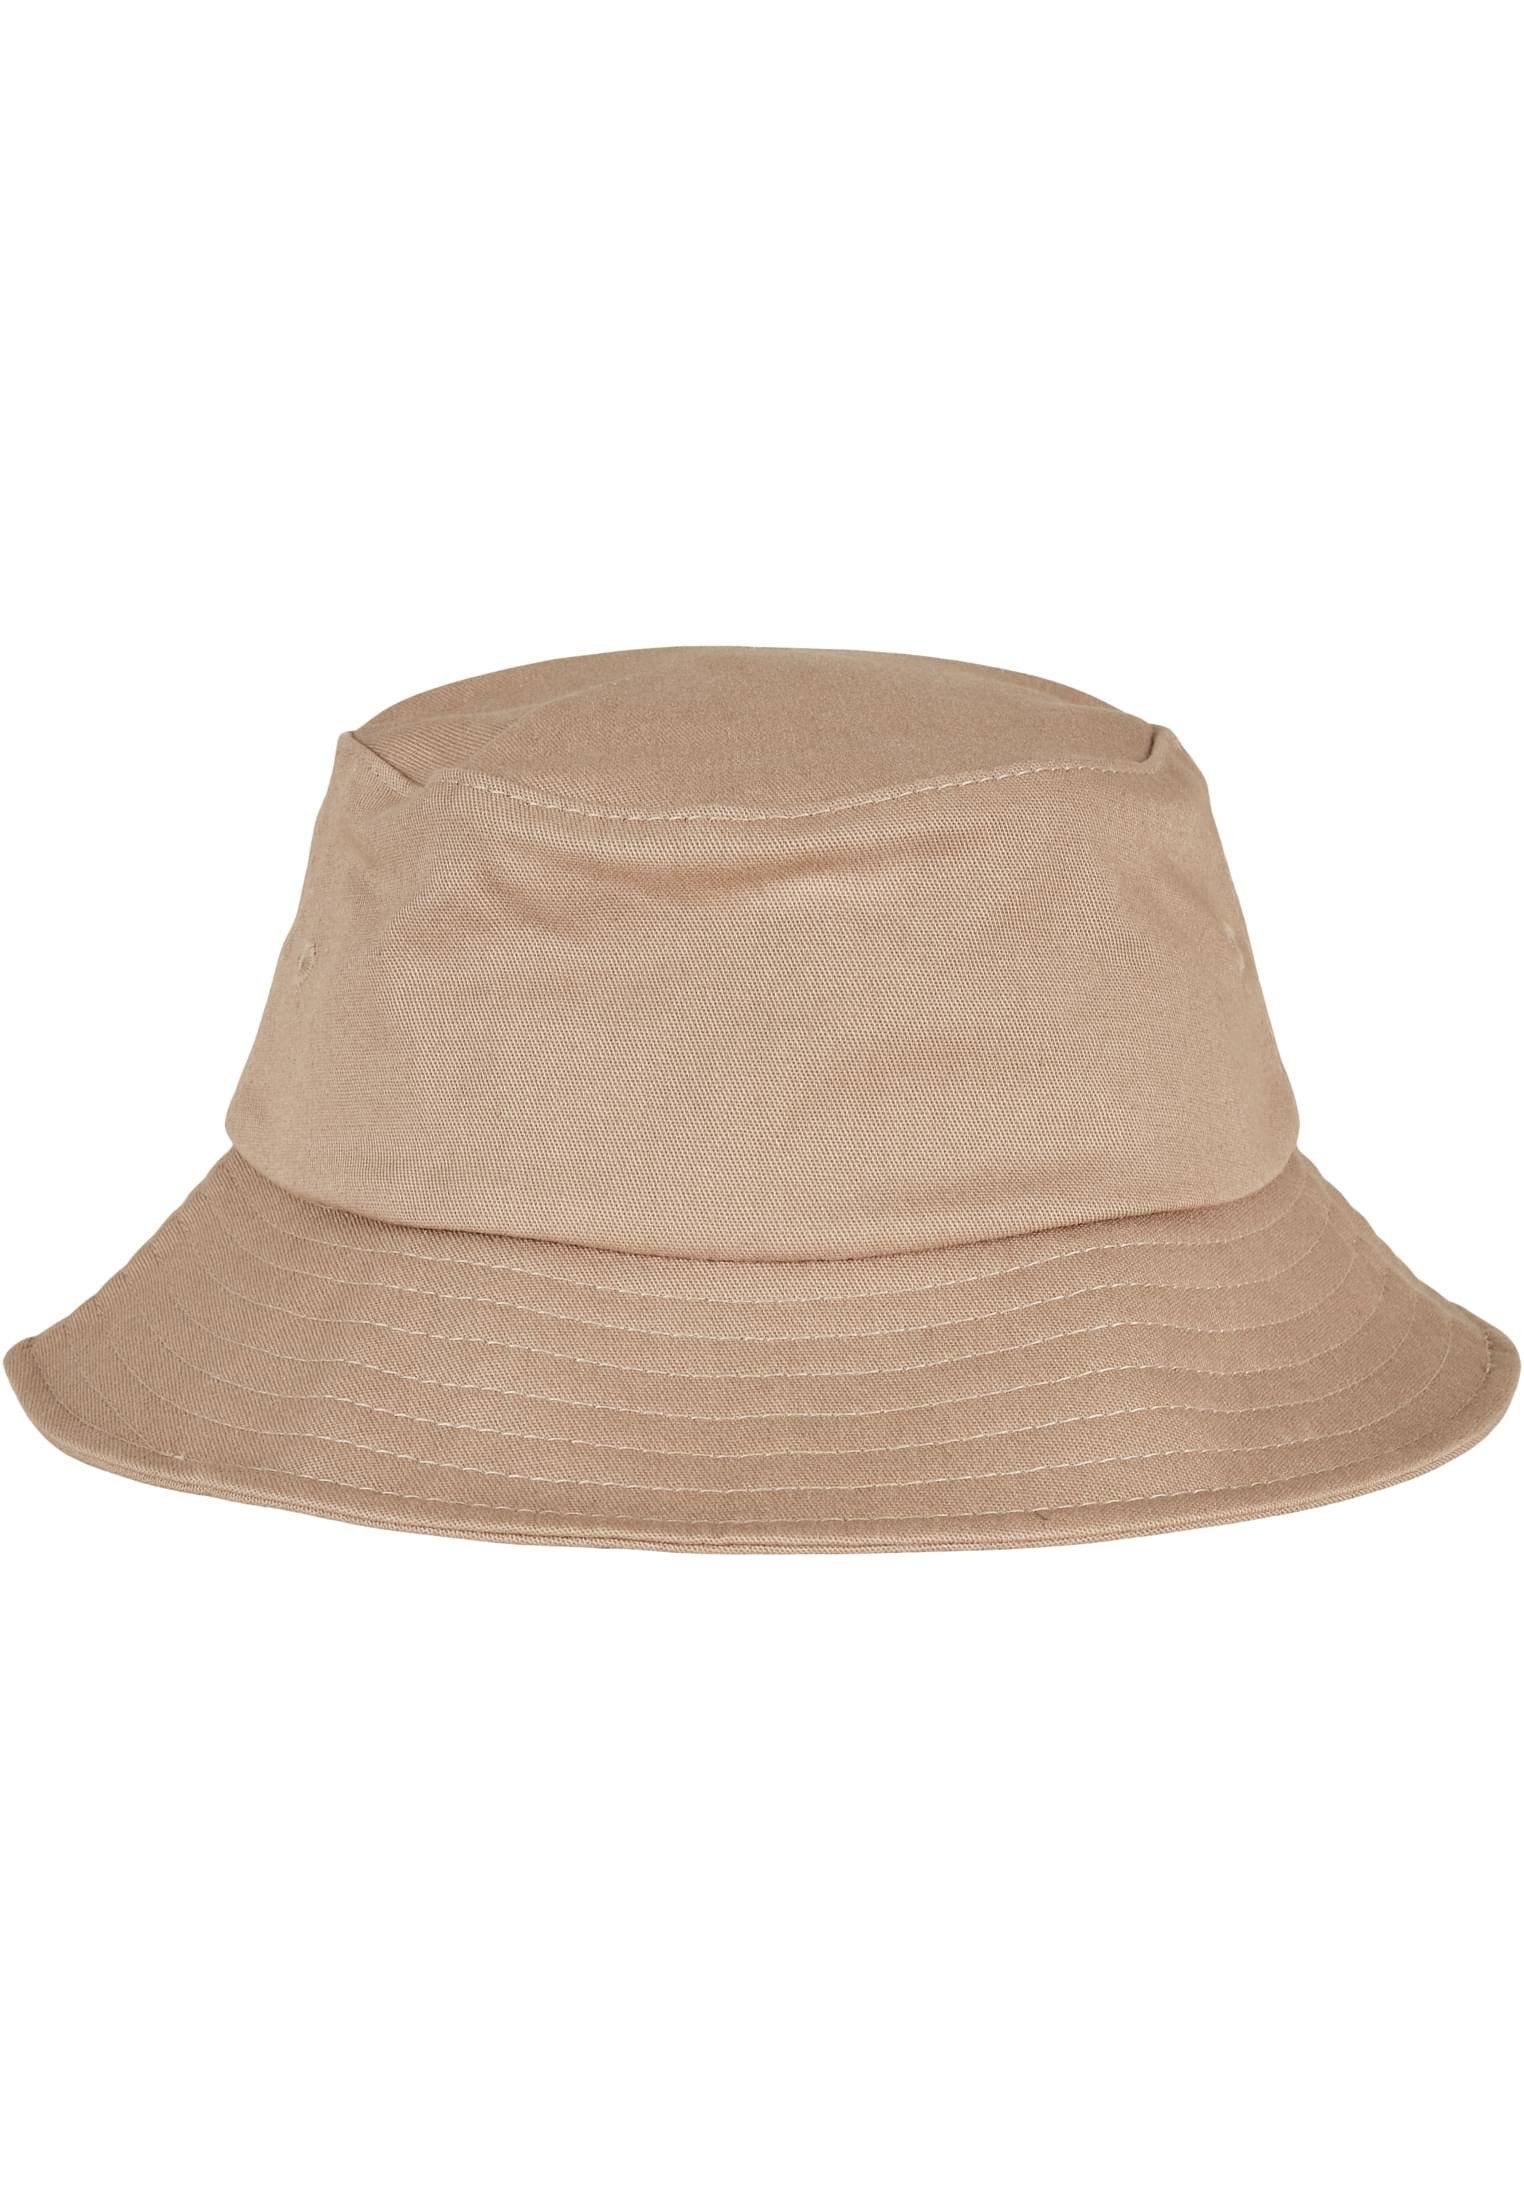 khaki Accessoires Flexfit Cap Twill Flex Bucket Flexfit Cotton Hat Kids